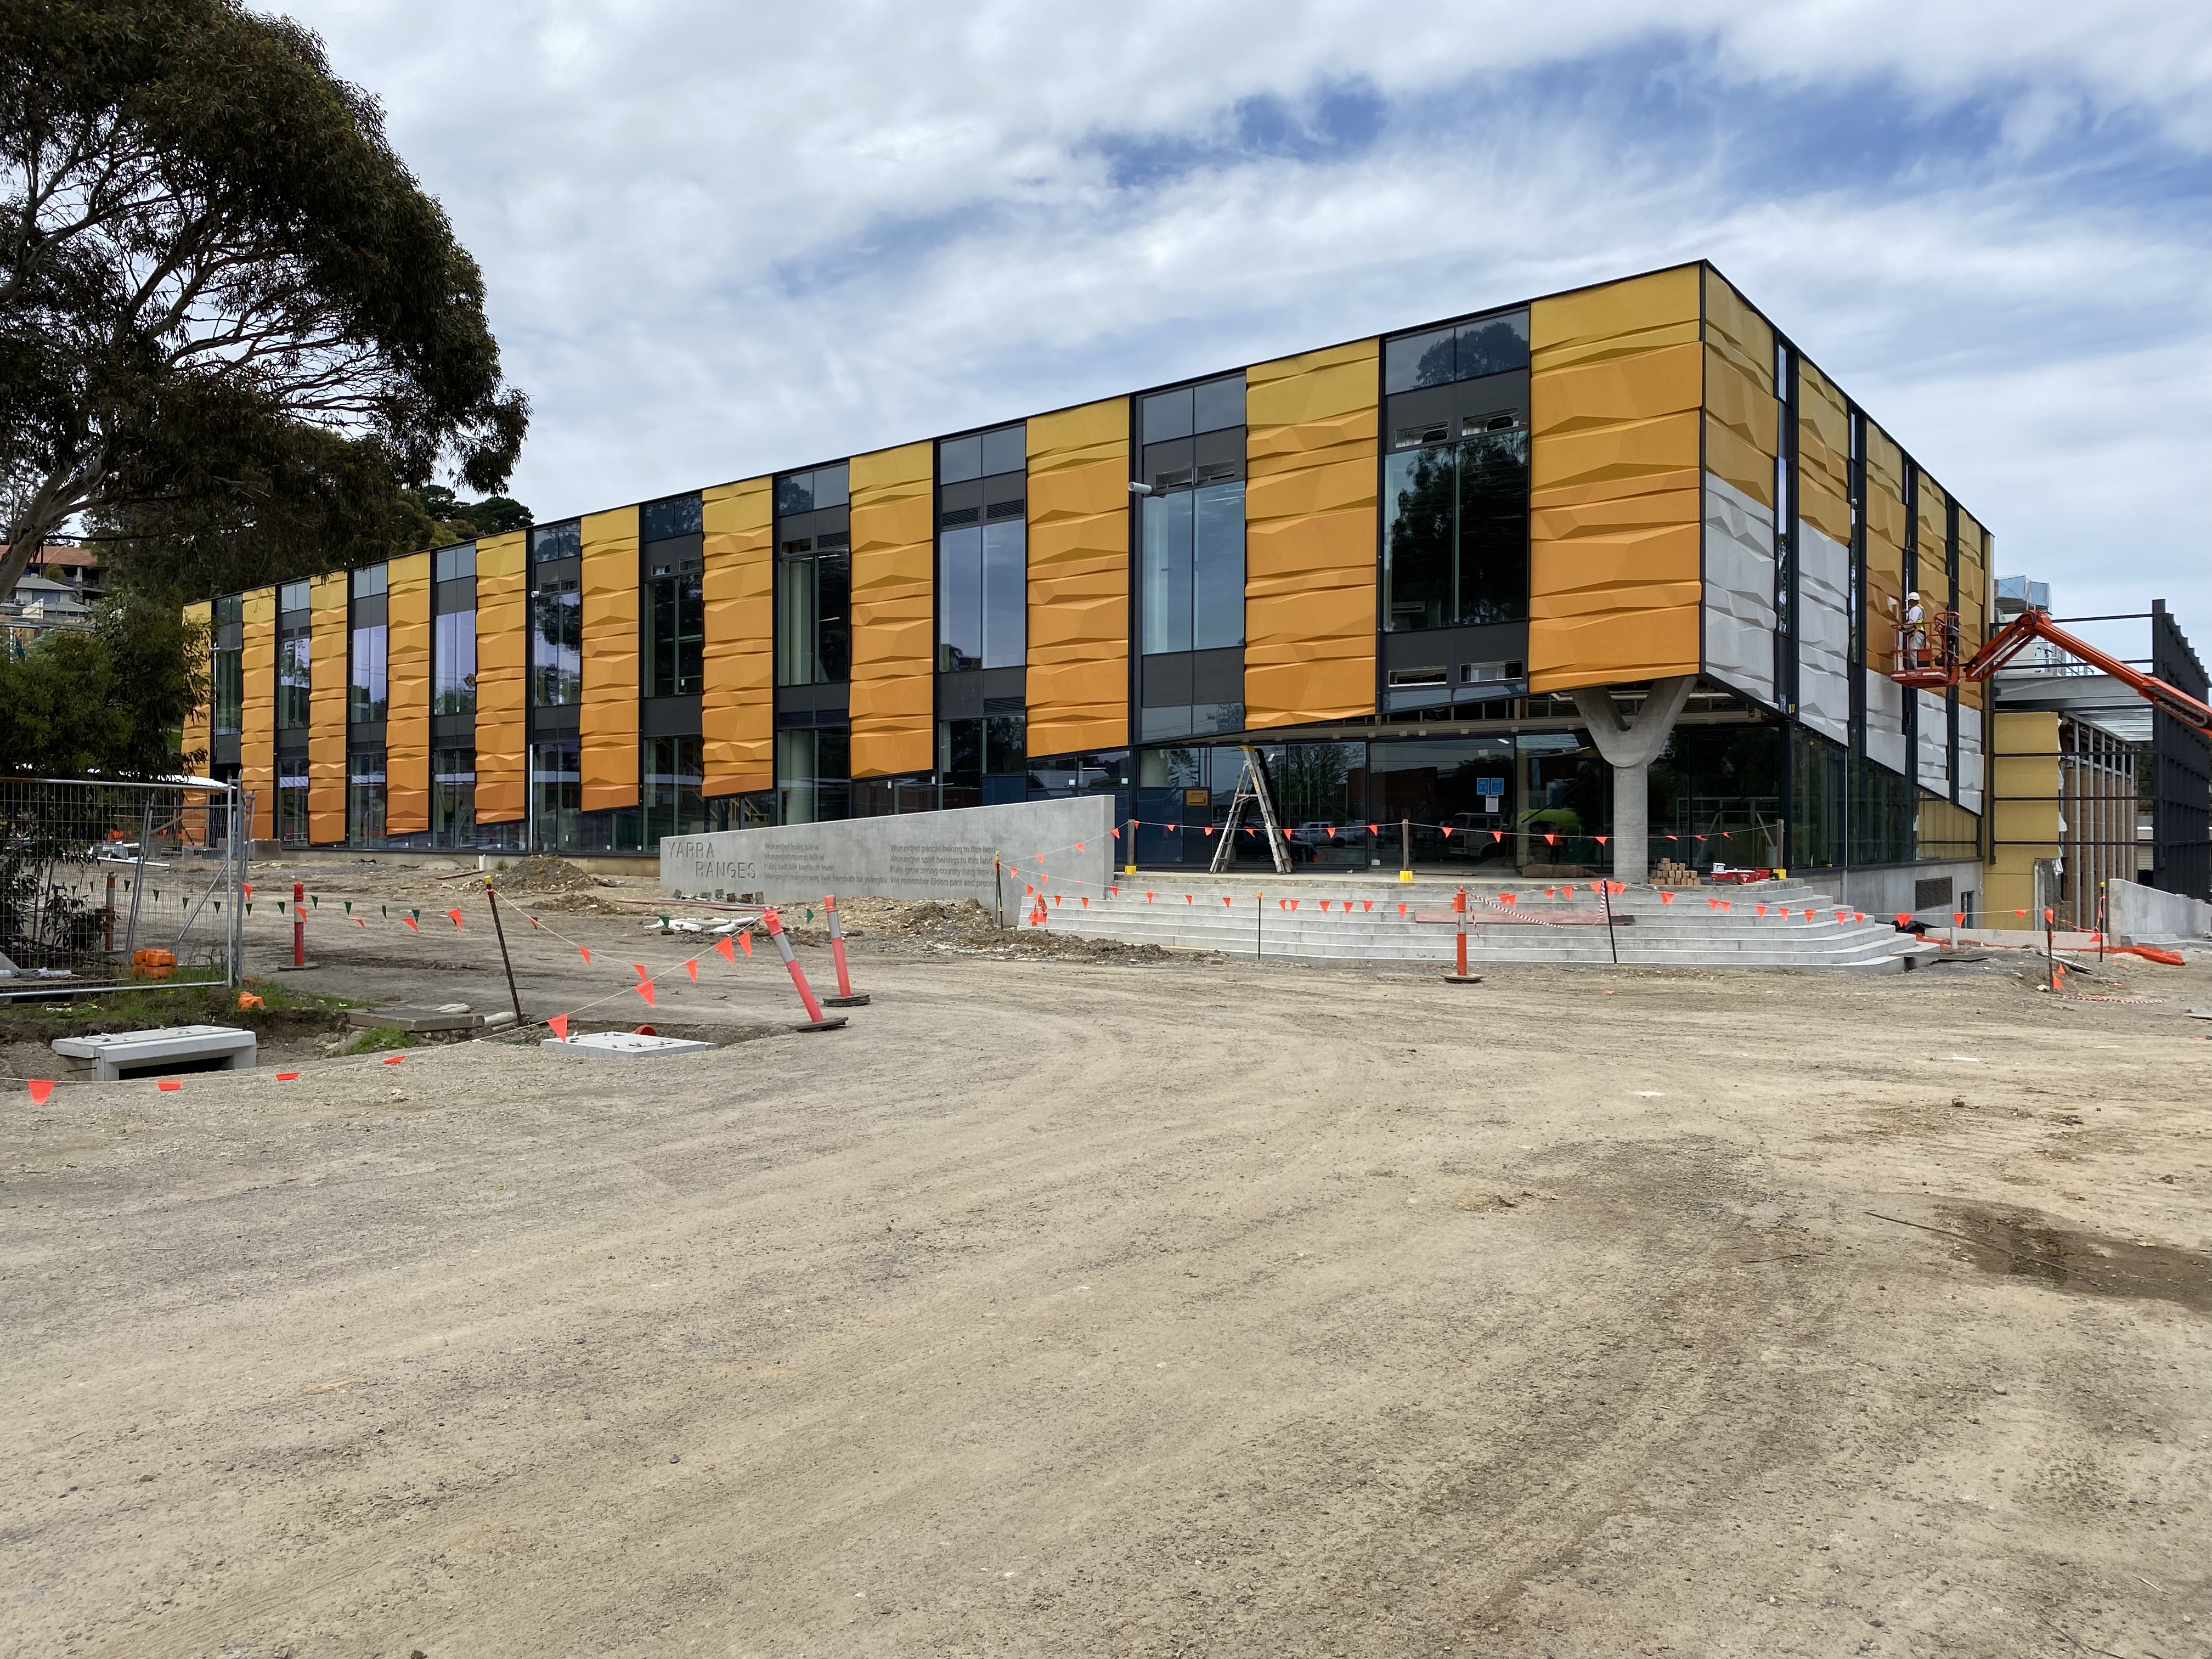 Yarra Ranges Council – Civic Centre Redevelopment